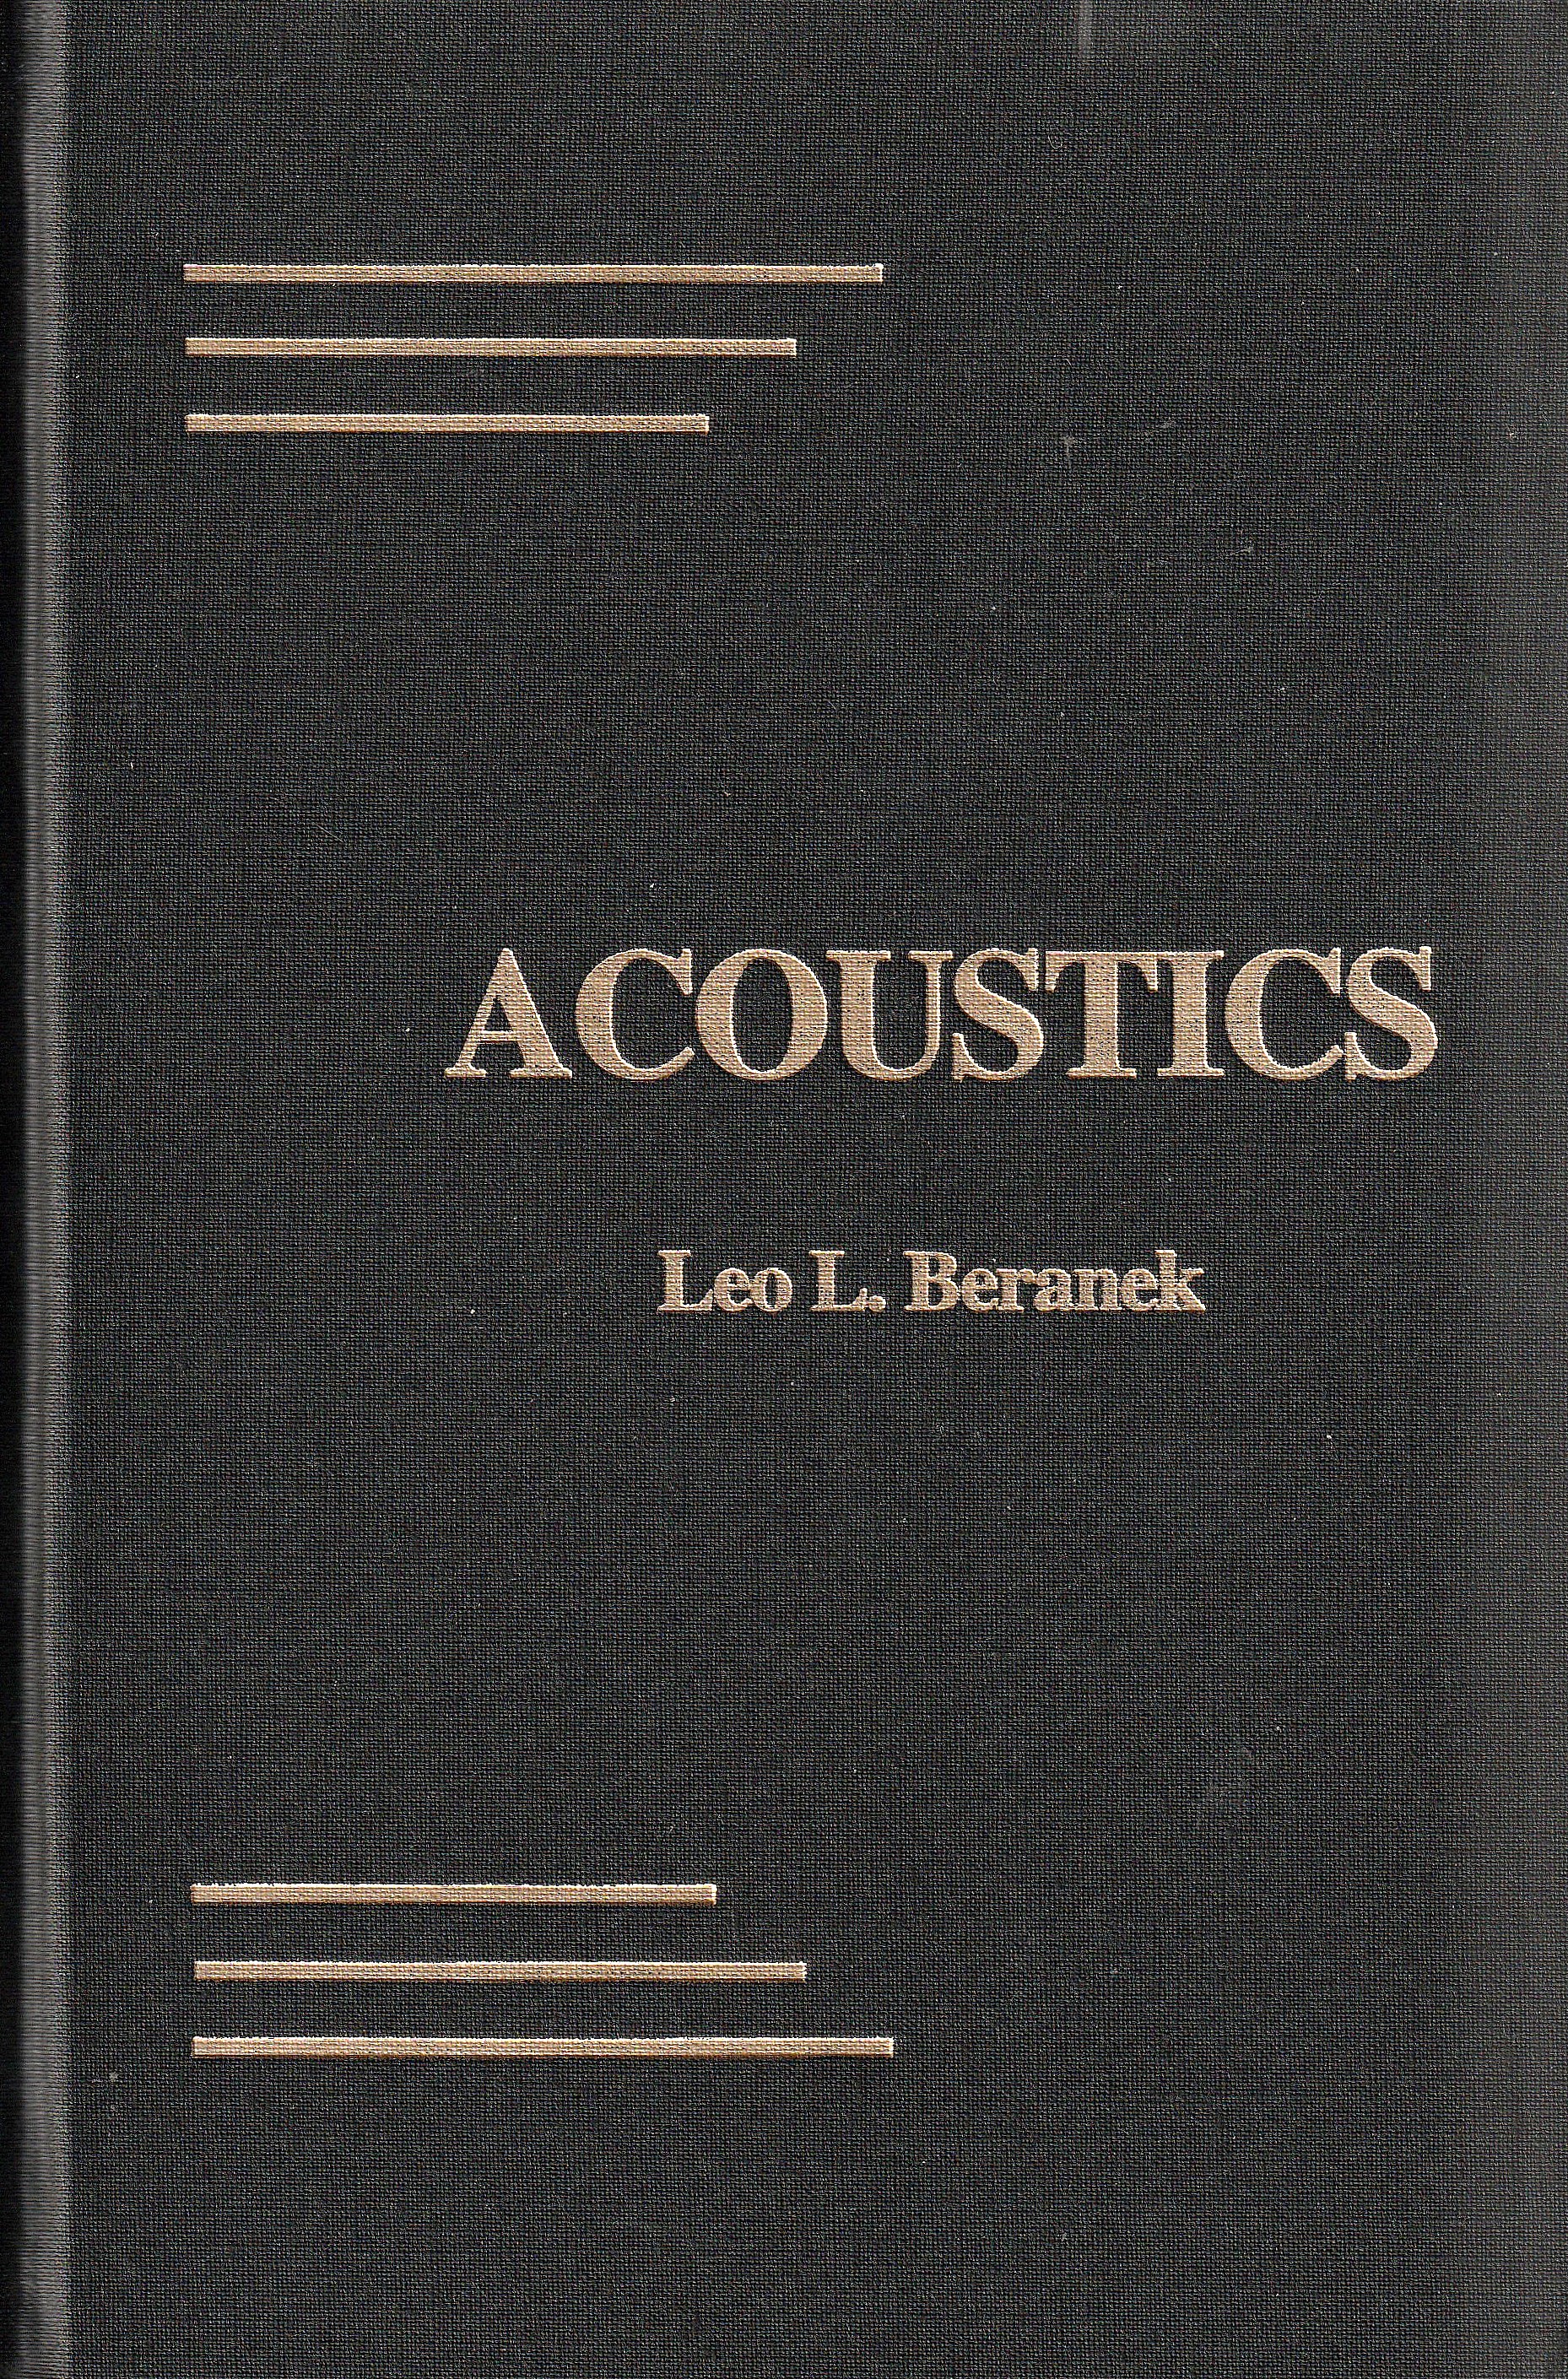 Acoustics - Leo L. Beranek